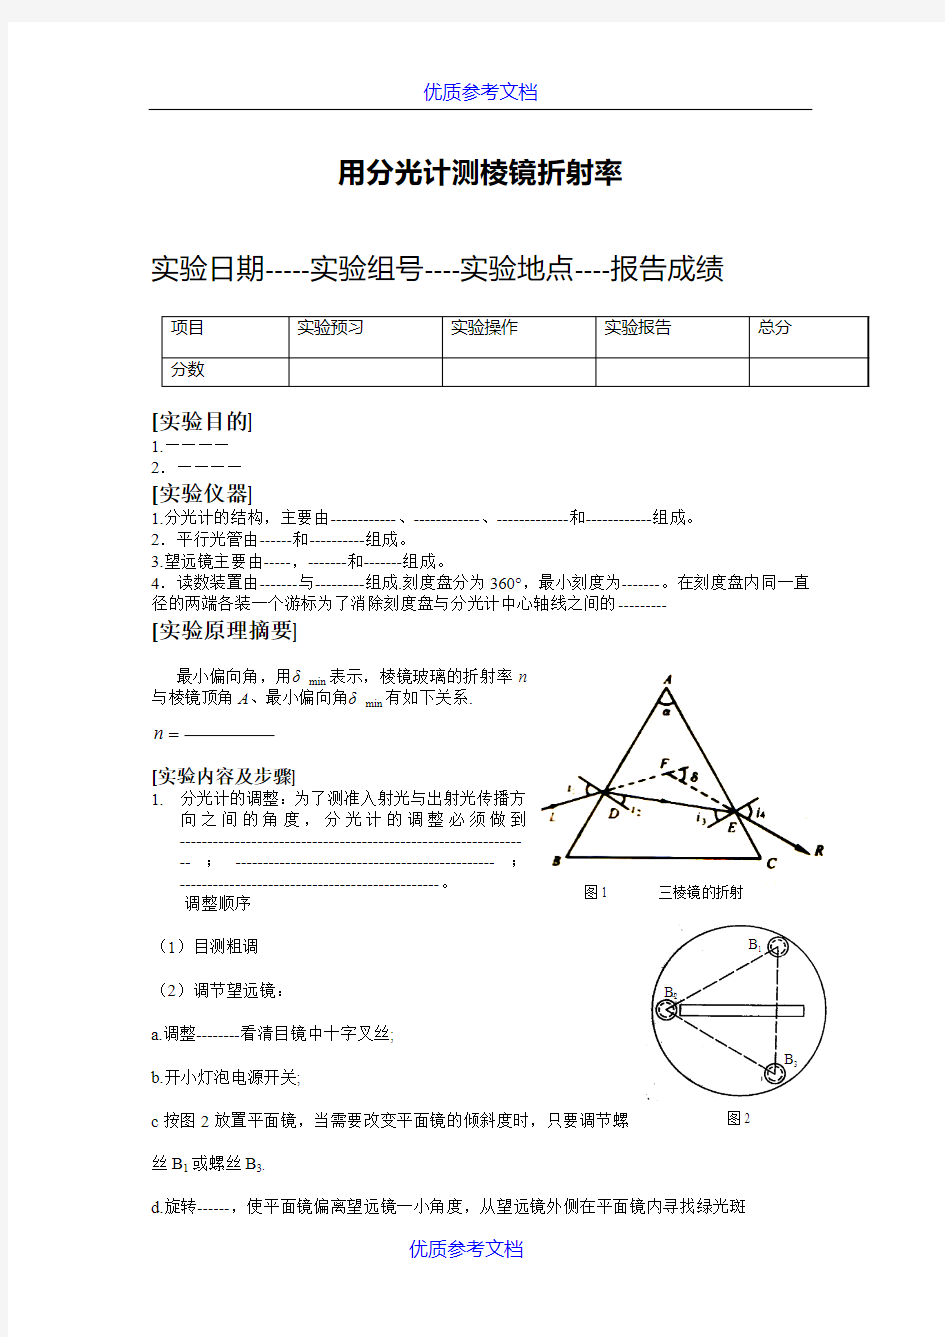 [实用参考]大学物理实验报告册-测三棱镜的折射率